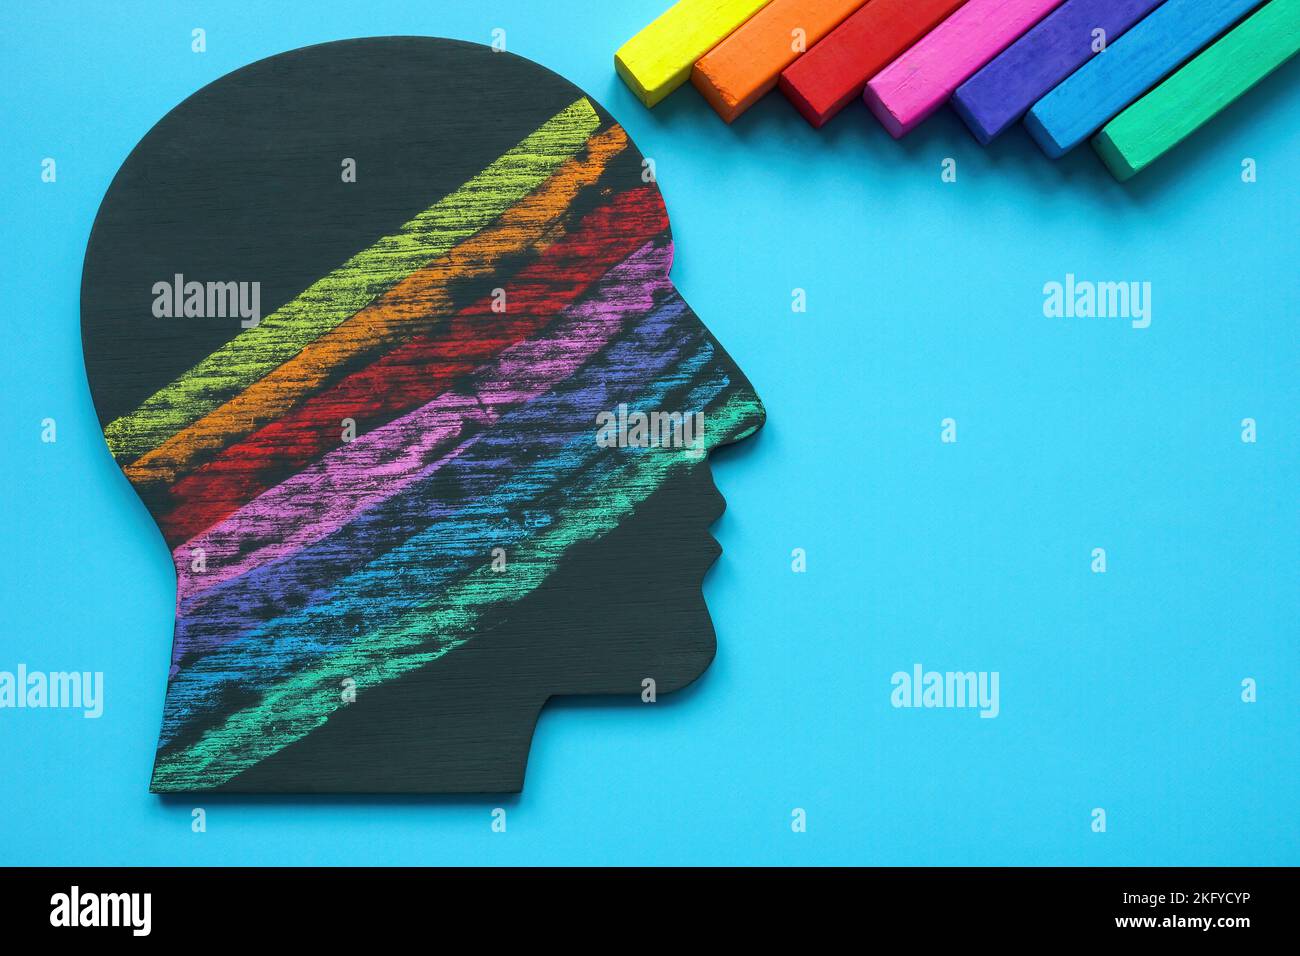 Kopf mit Linien, die mit farbigen Buntstiften gezeichnet sind. Positive Emotionen und Denkweise. Stockfoto